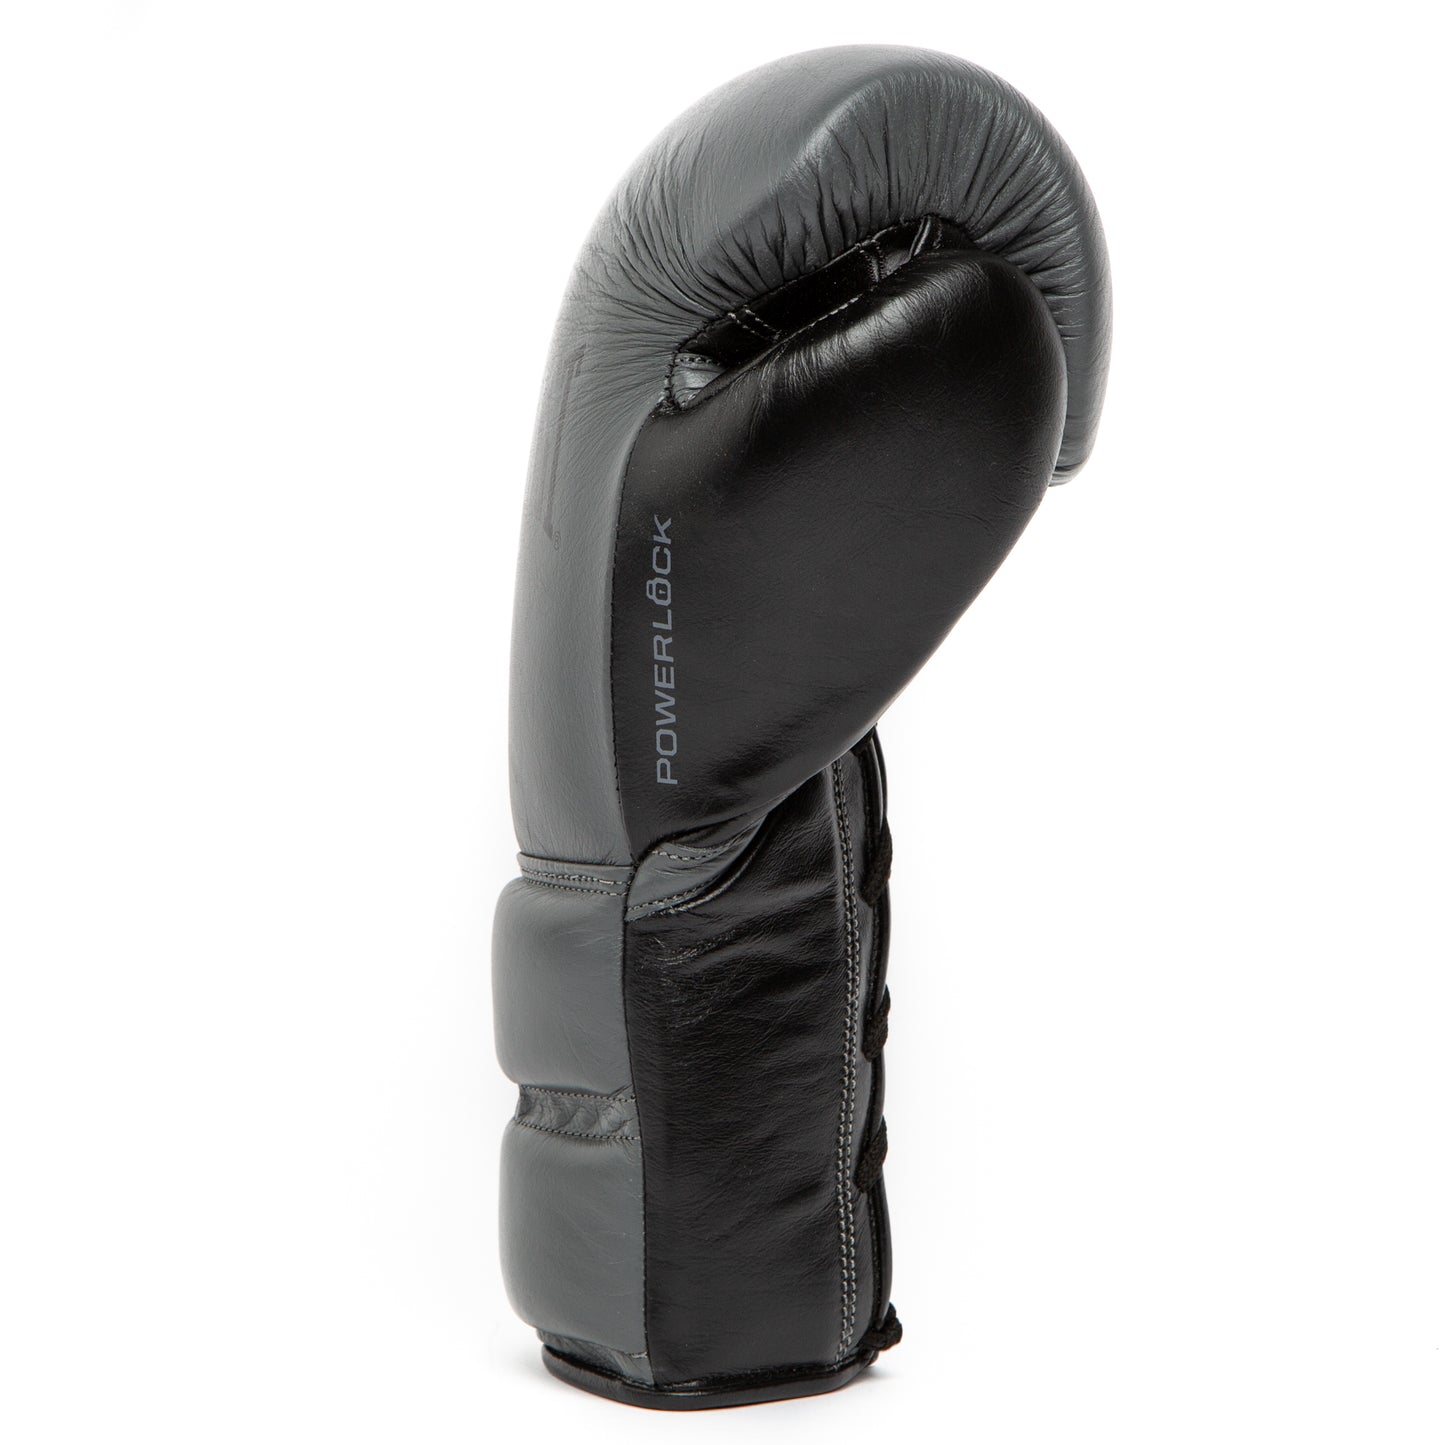 Powerlock 2 Pro Fight Gloves - Everlast